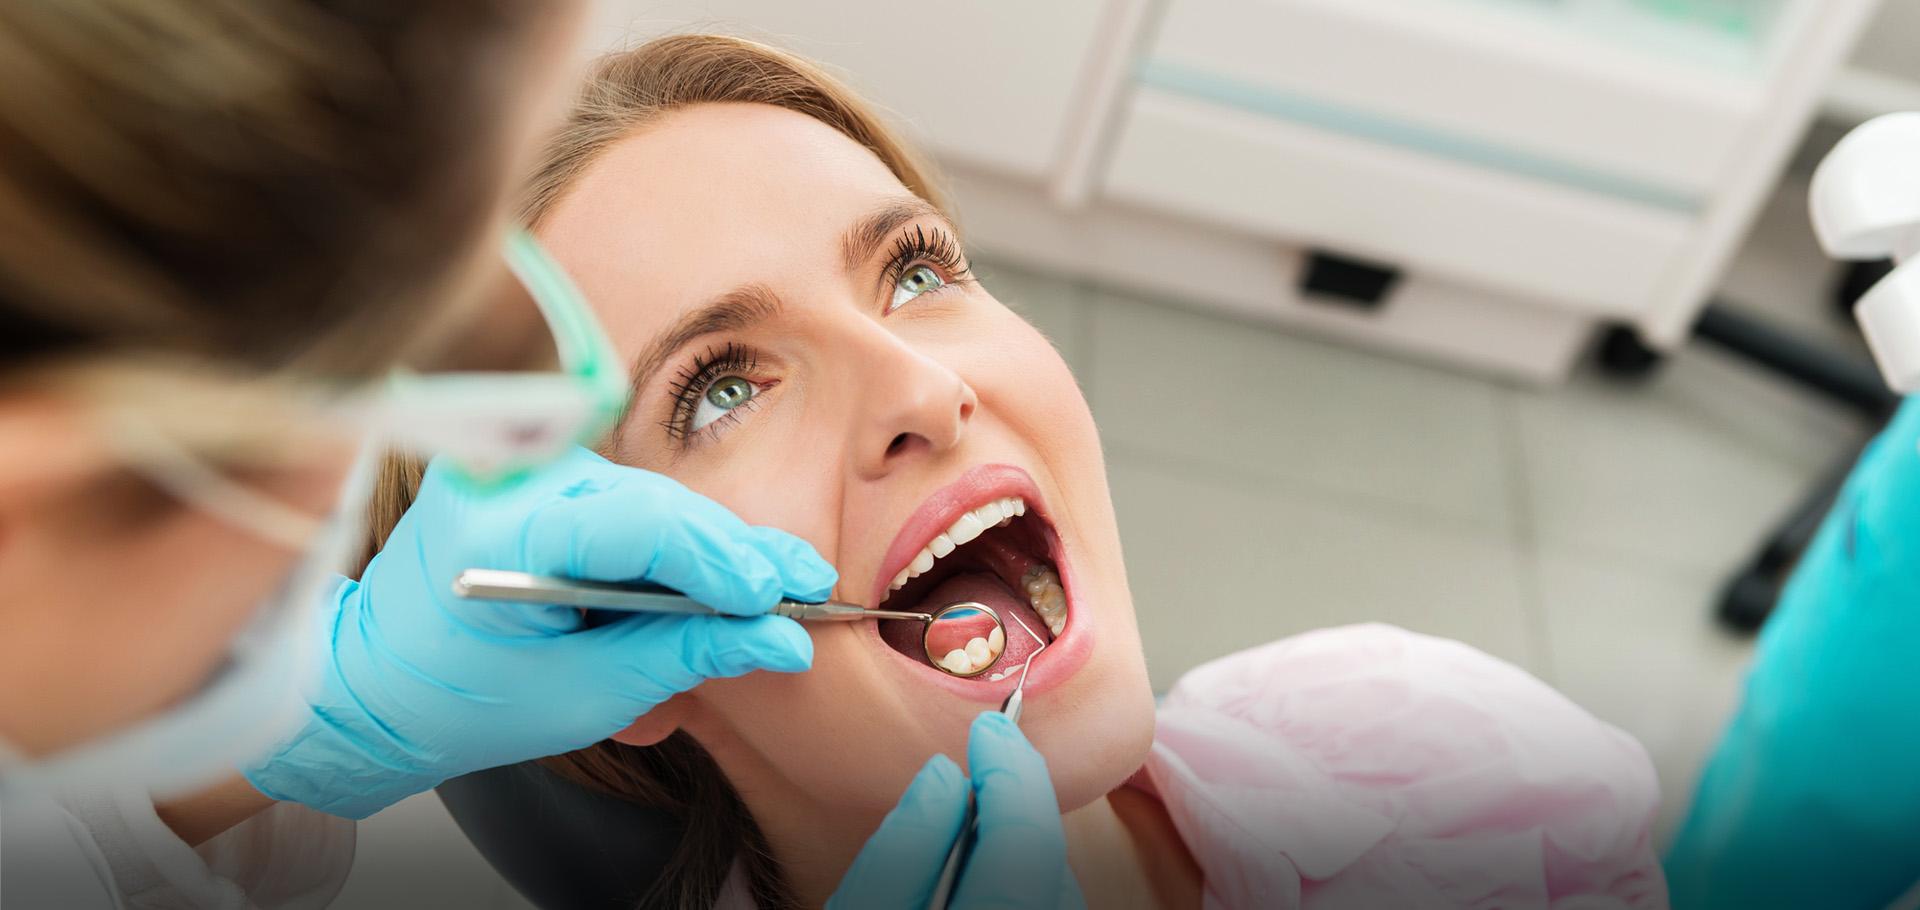 Slajd #3 - stomatolog przeglądający stan uzębienia klientki